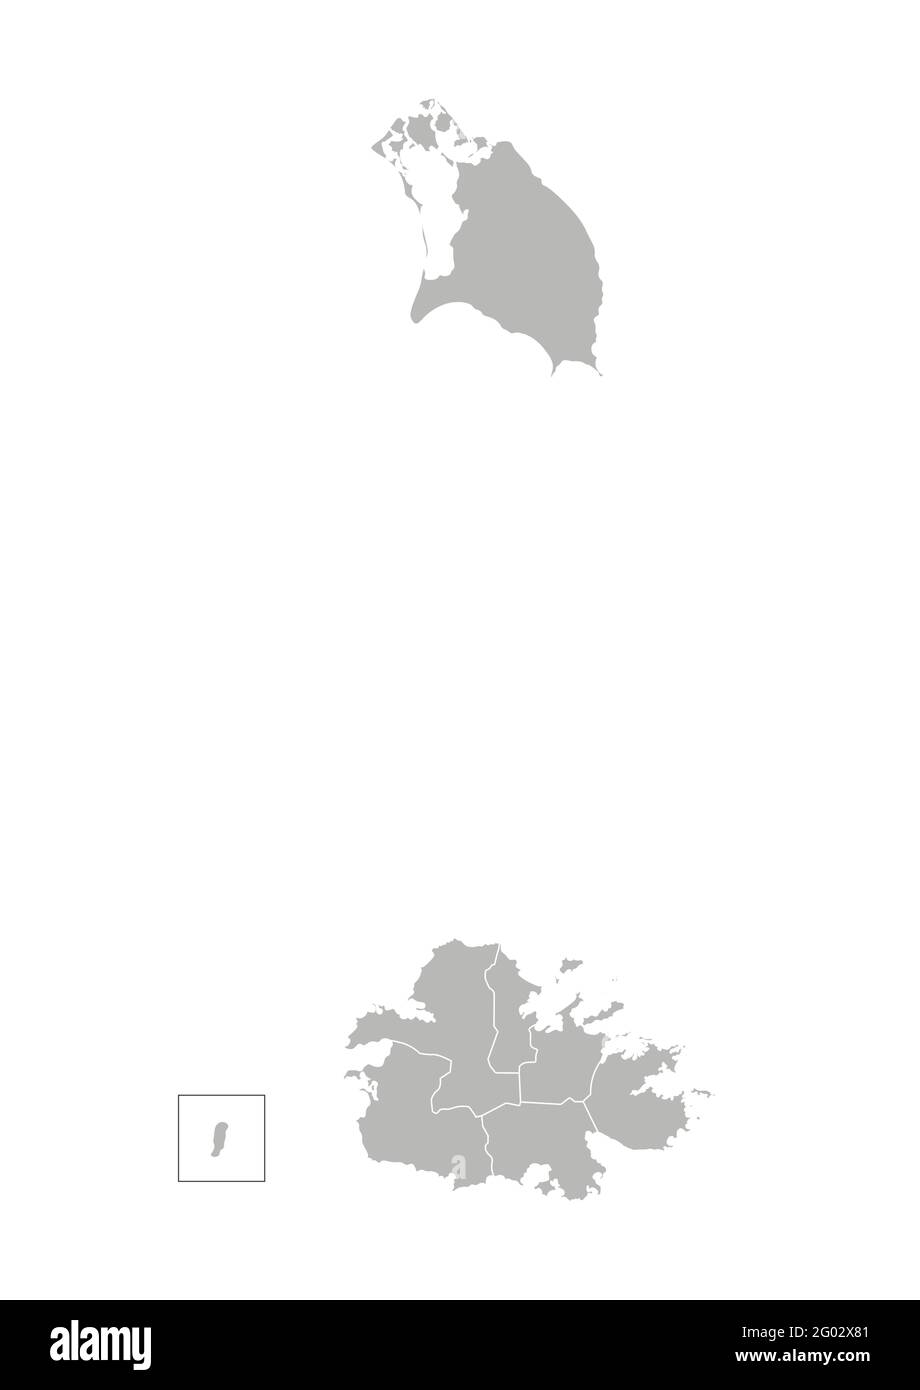 Vector ilustración aislada del mapa administrativo simplificado de Antigua y Barbuda. Fronteras de las regiones. Siluetas grises. Contorno blanco. Ilustración del Vector